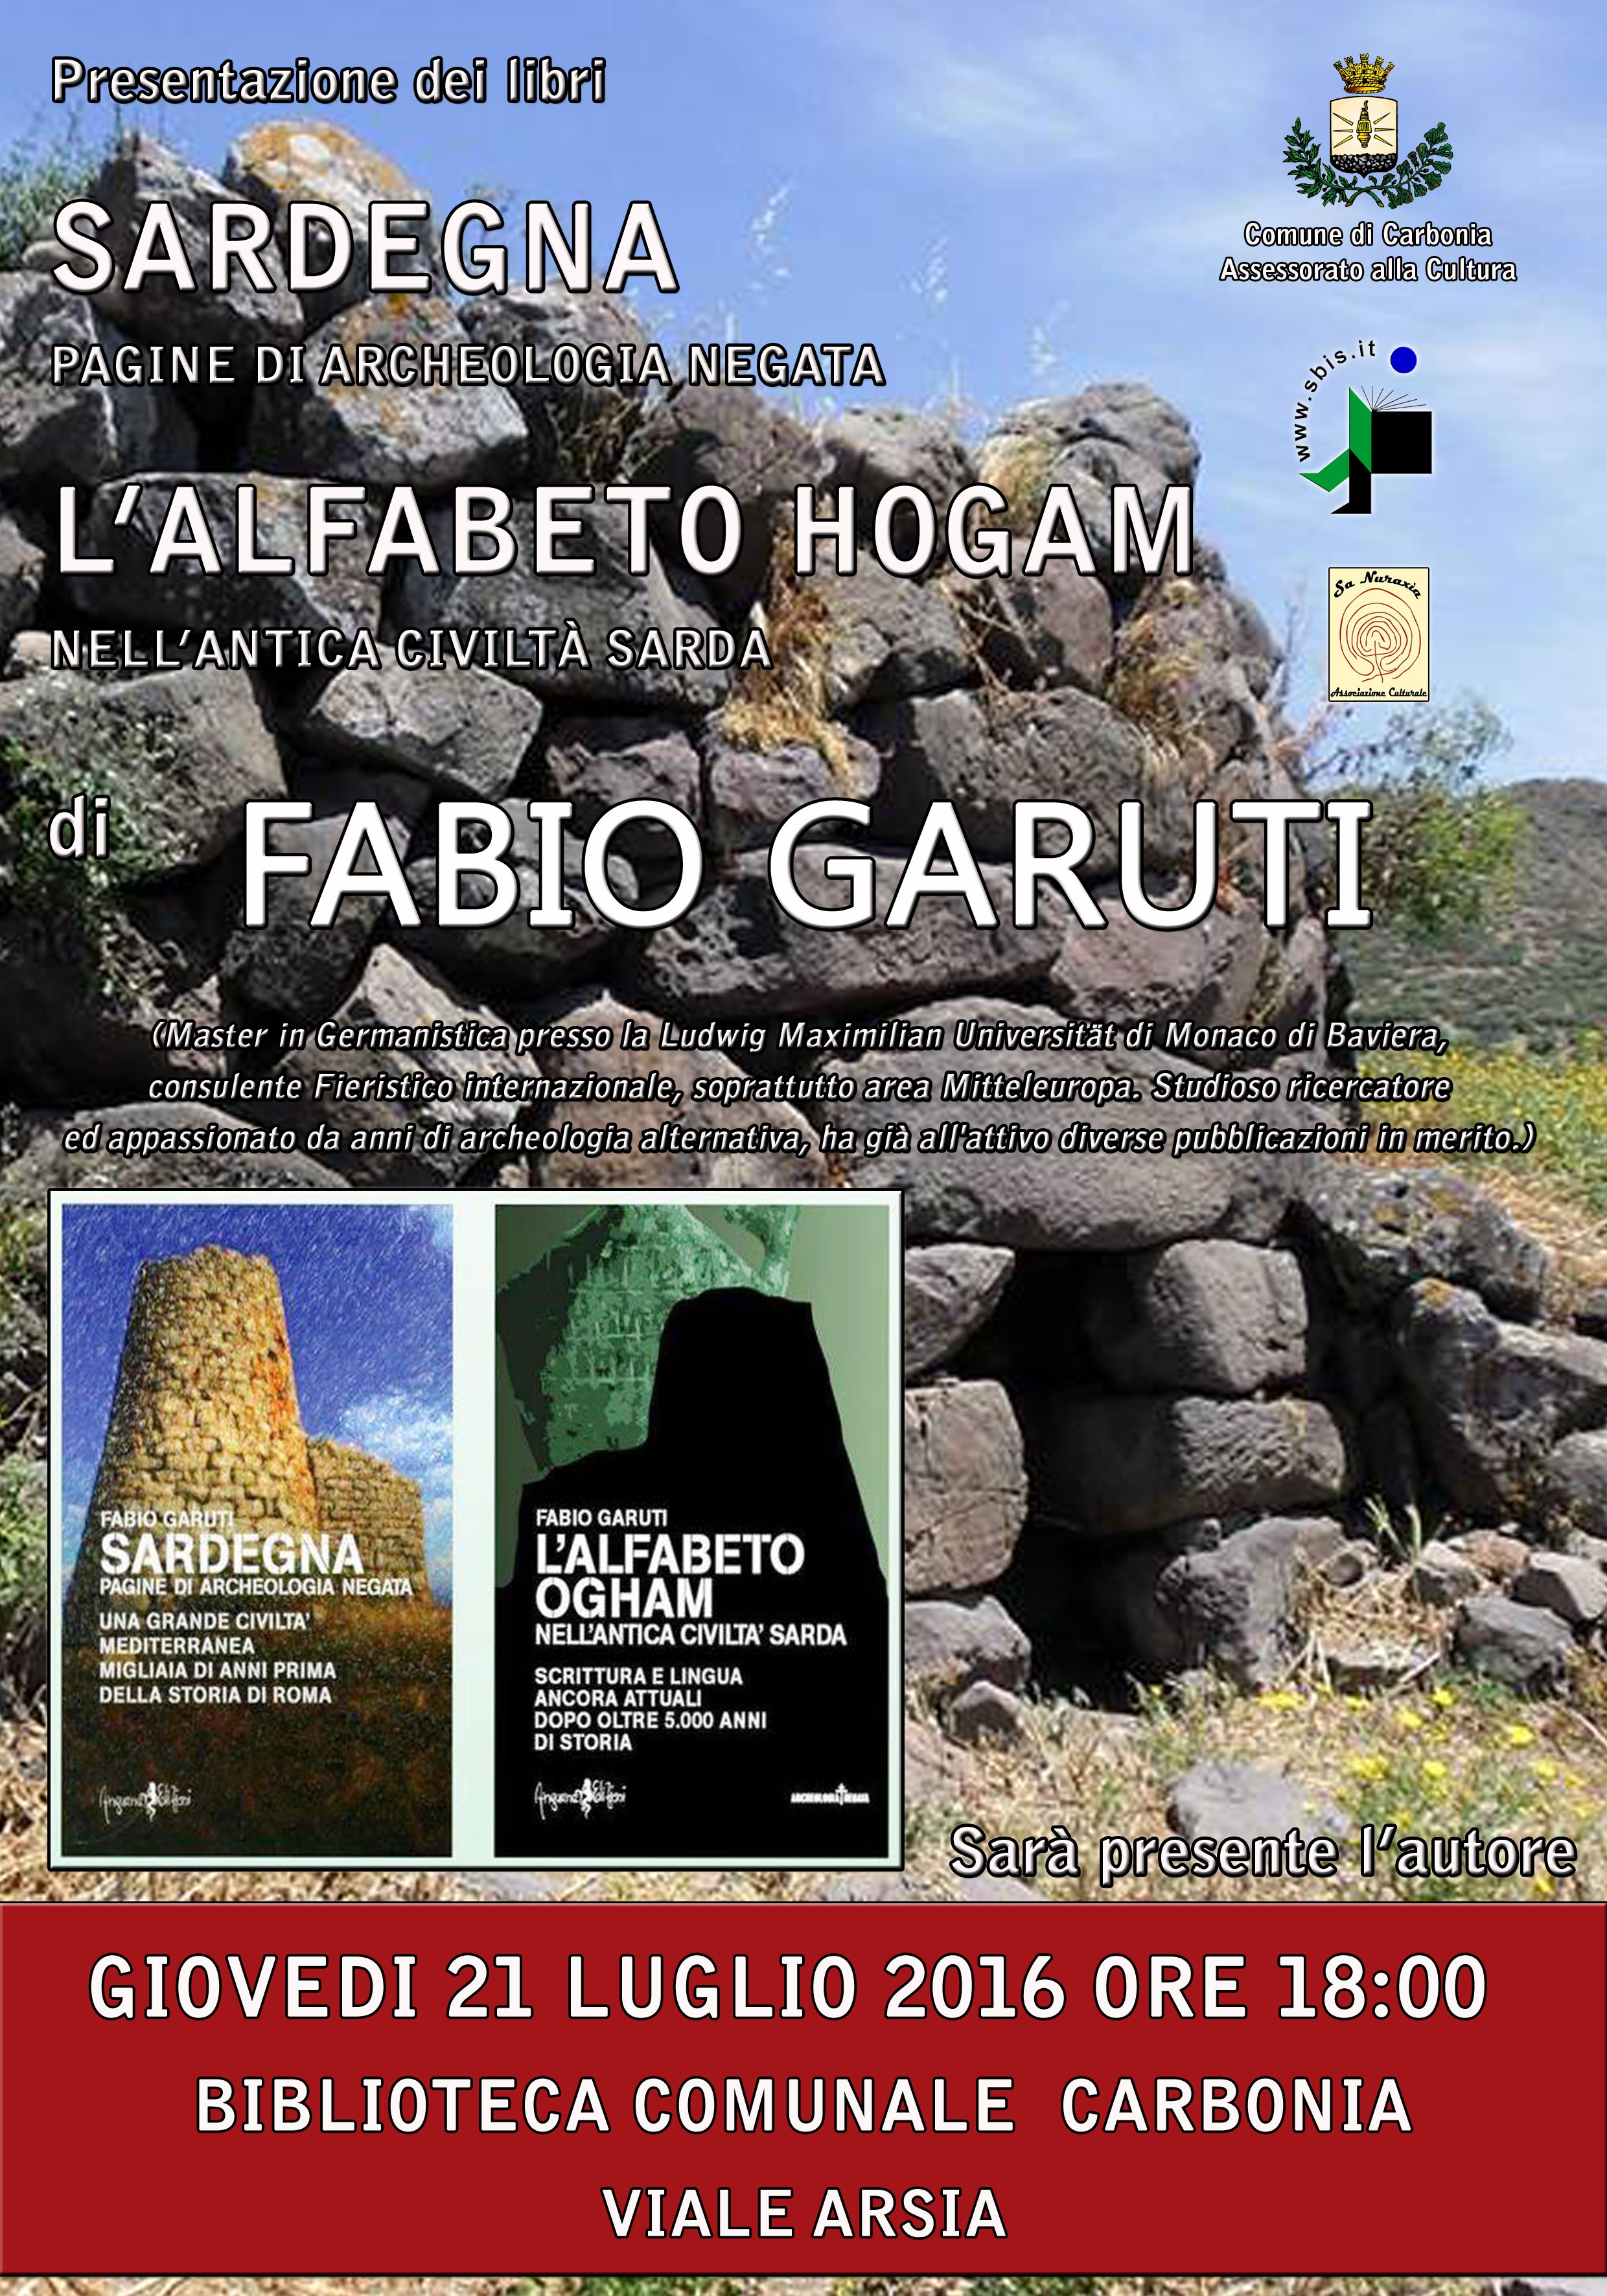 21 luglio 2016 presso la Biblioteca Comunale di Carbonia presentazione dei libri "Sardegna - Pagine di Archeologia Negata" e “L'Alfabeto Ogham nell'Antica Civiltà Sarda”.